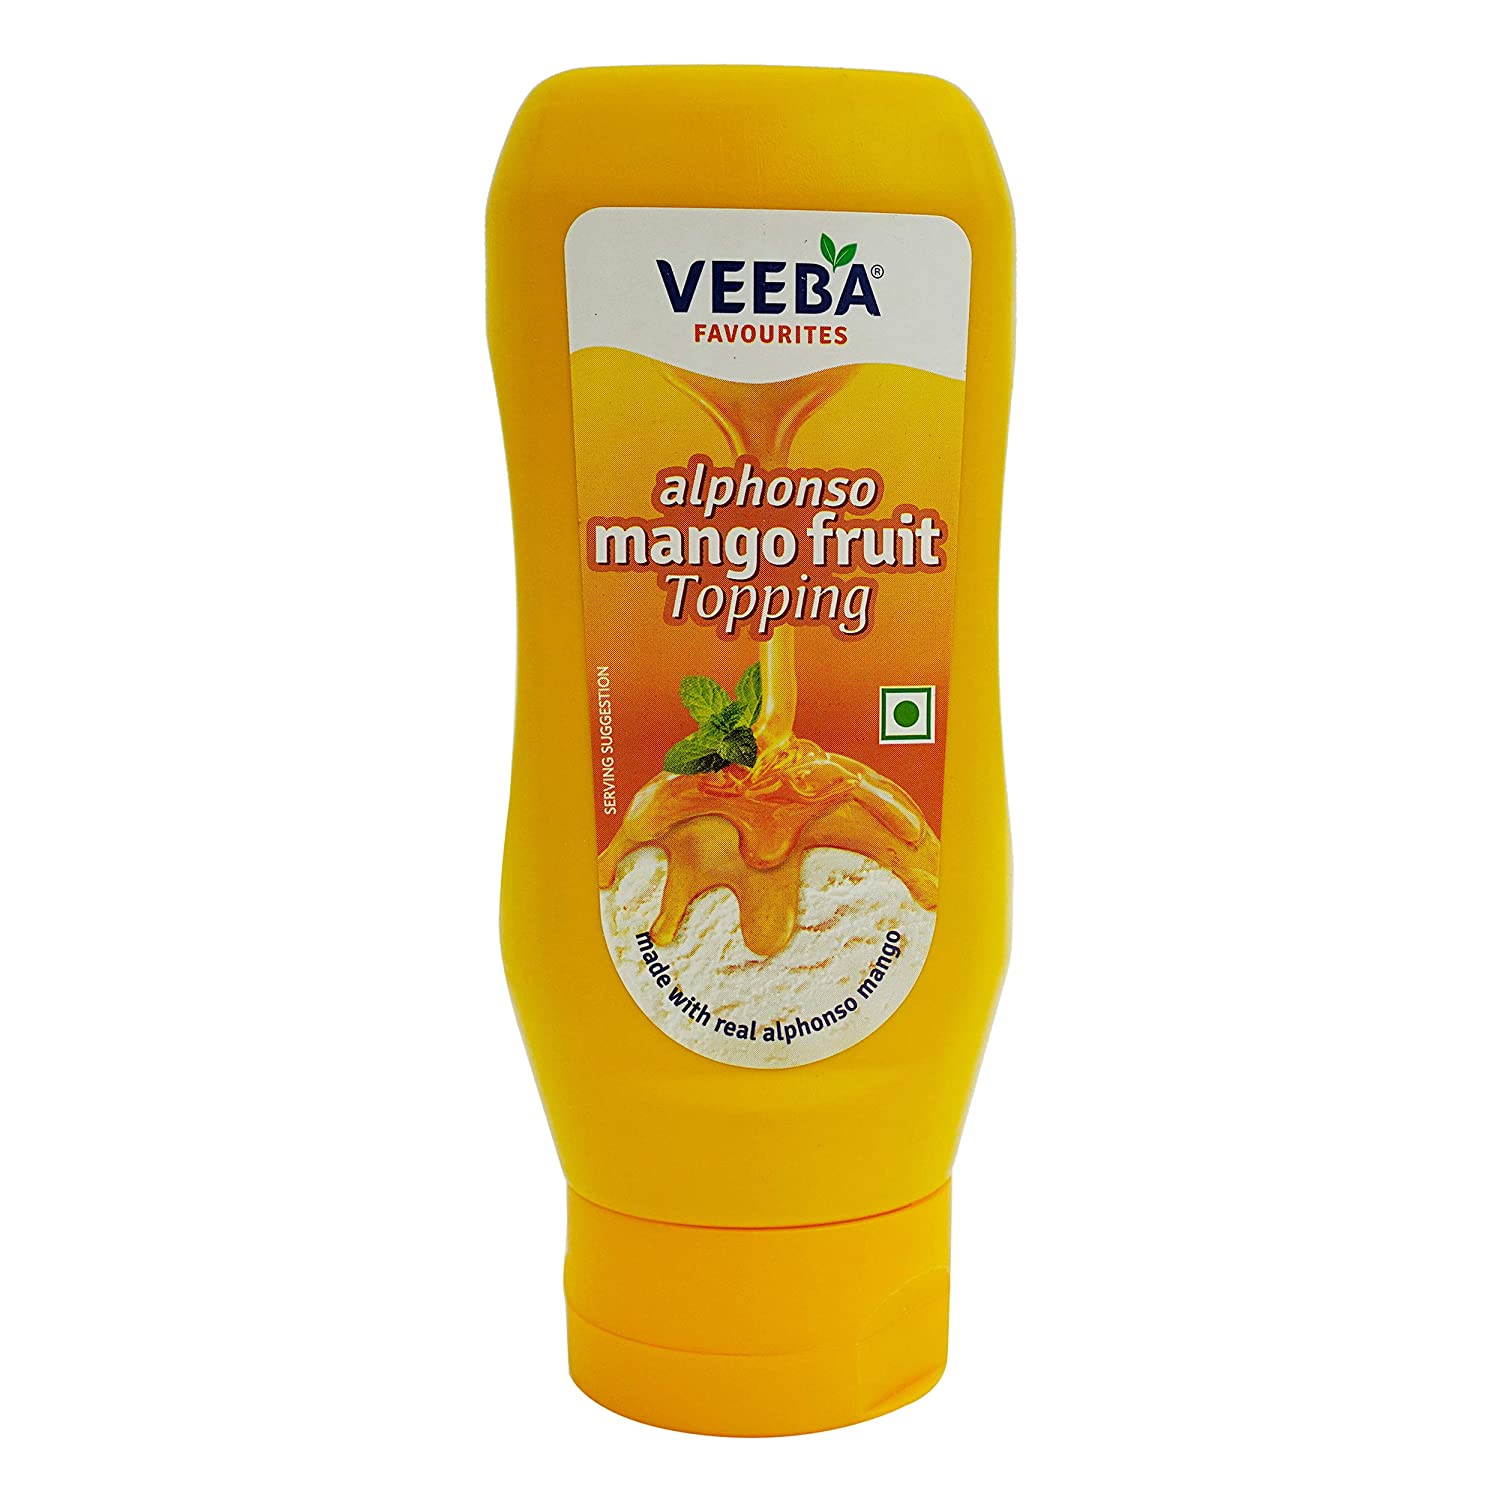 Veeba Alphonso Mango Fruit Topping Image